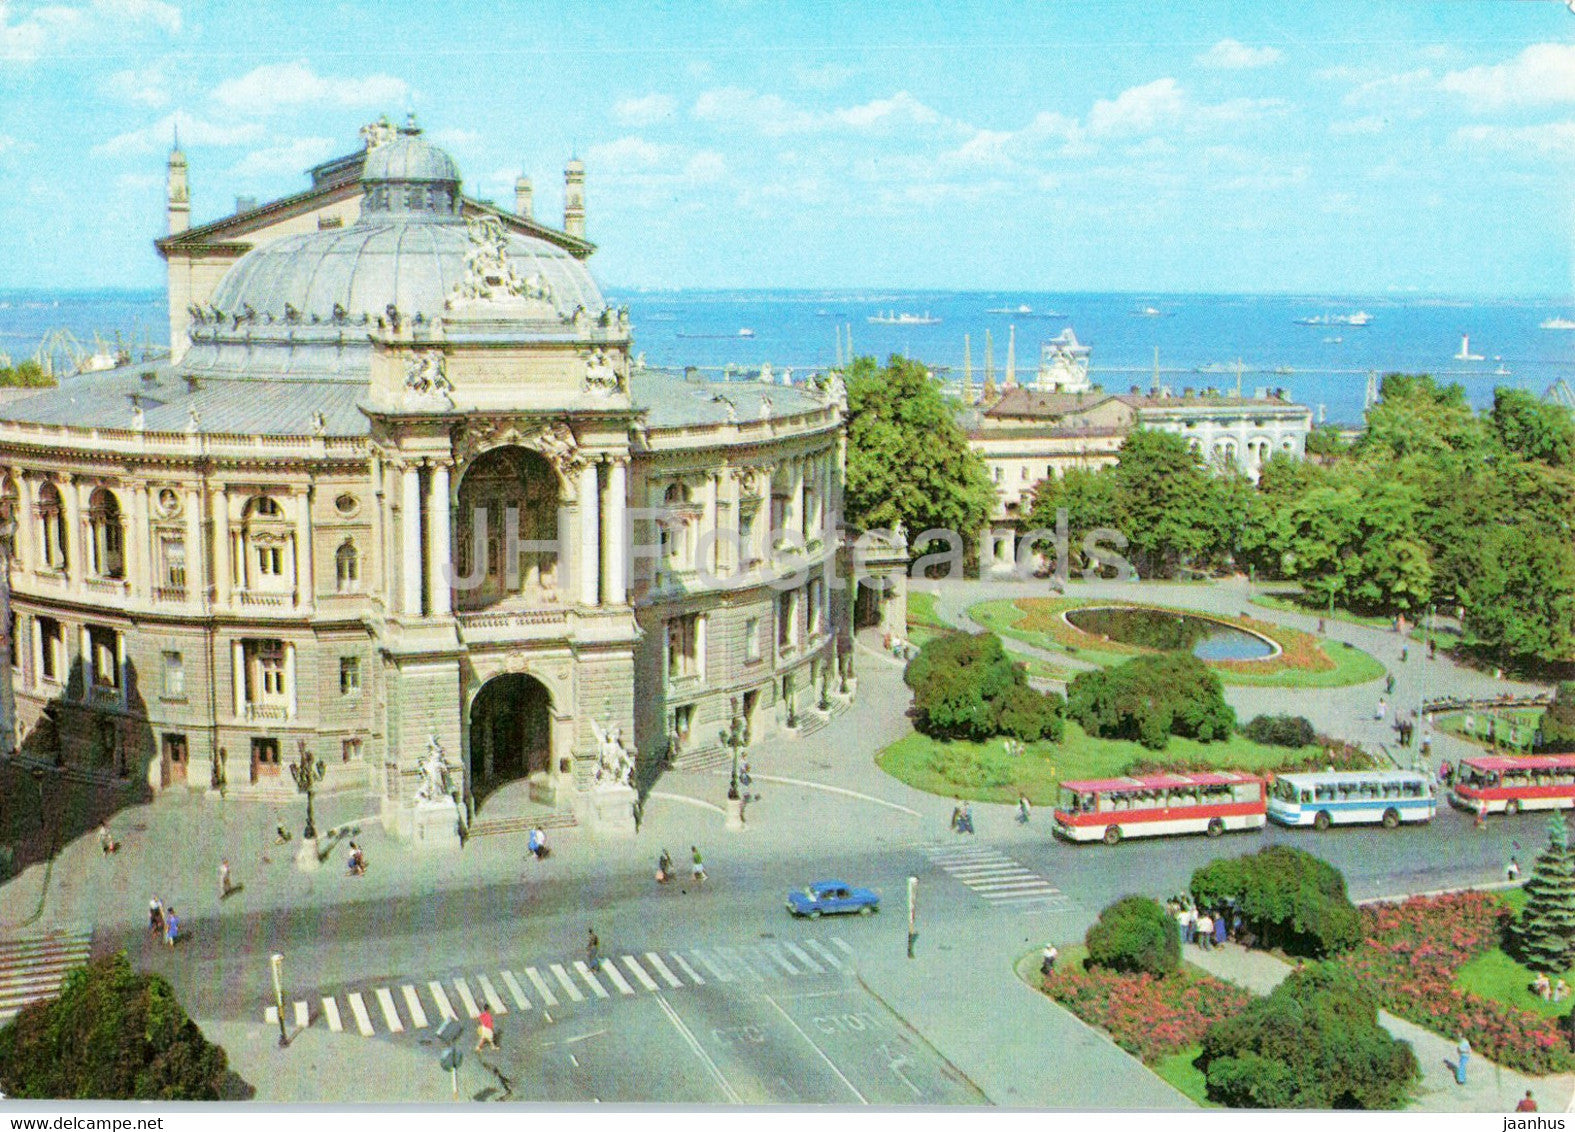 Odessa - Opera and Ballet Theatre - bus Ikarus - postal stationery - 1983 - Ukraine USSR - unused - JH Postcards